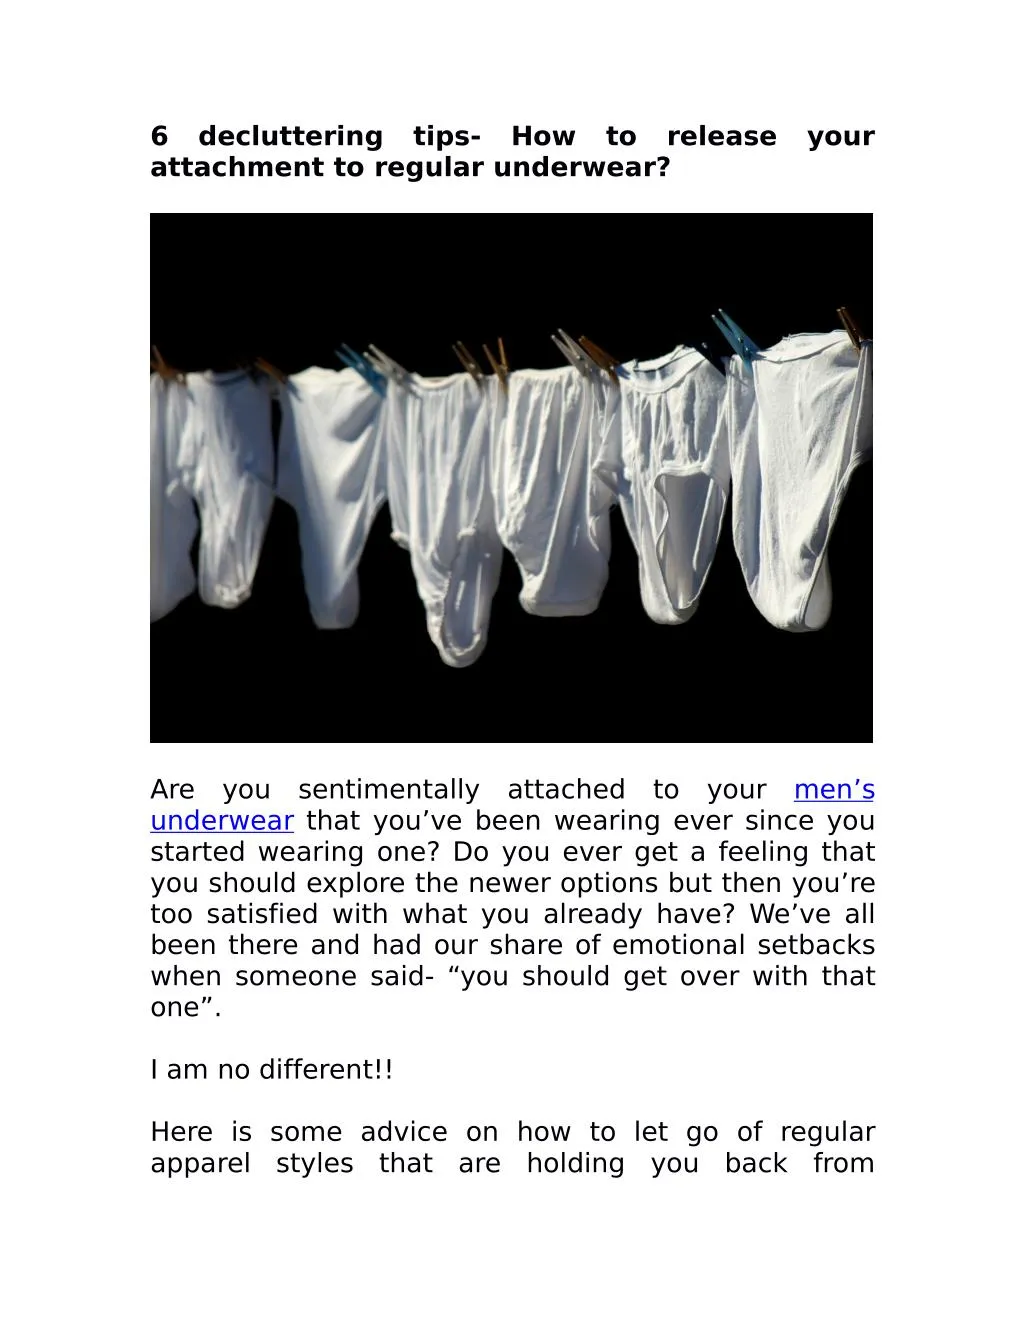 6 attachment to regular underwear